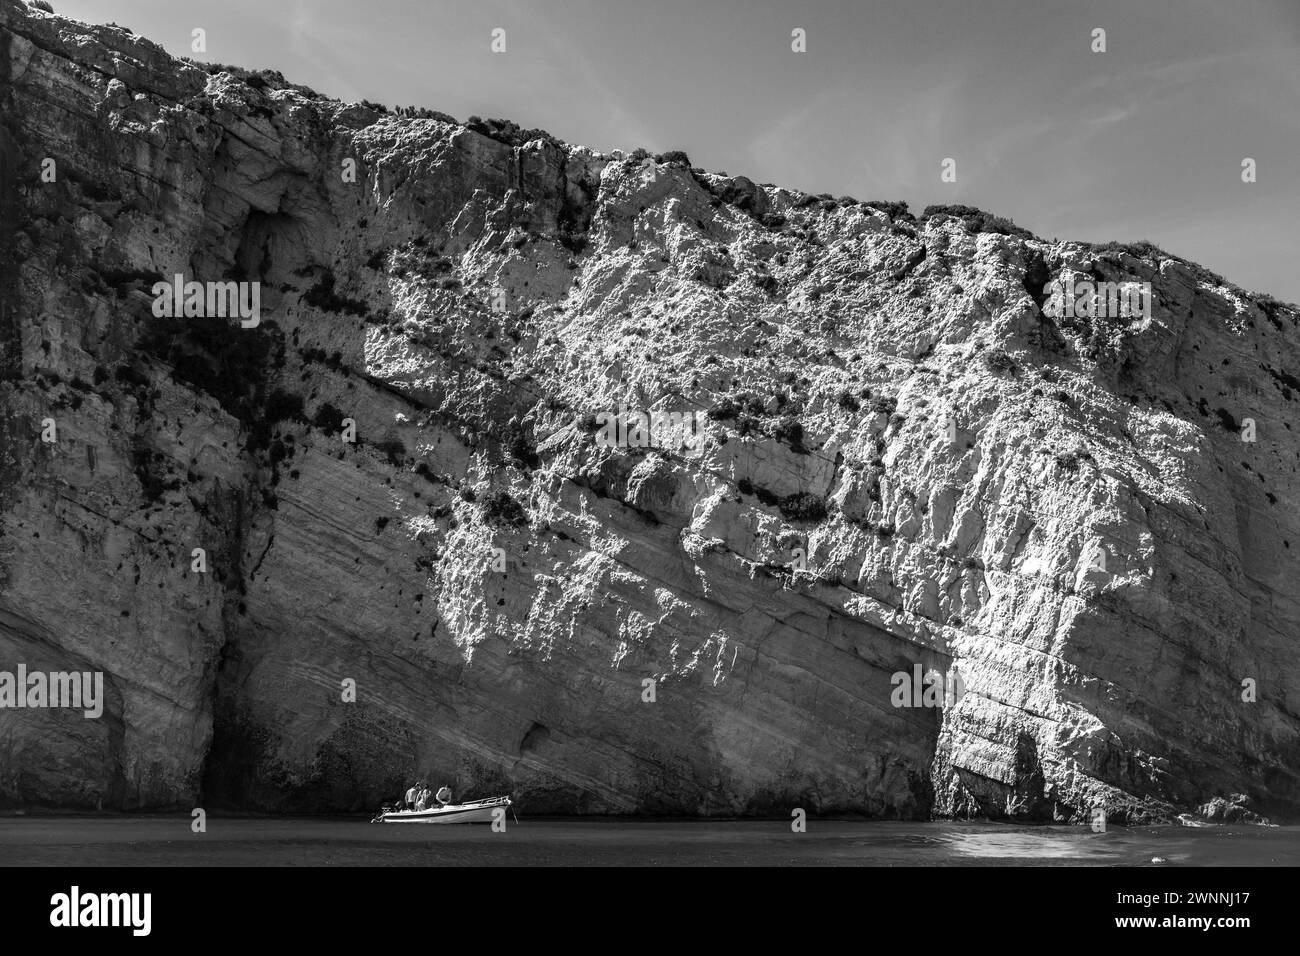 Zakynthos, Grèce - 20 août 2016 : photo de paysage côtier noir et blanc avec des arches dans les rochers de l'île grecque de Zakynthos. Grotte bleue, landma naturel Banque D'Images